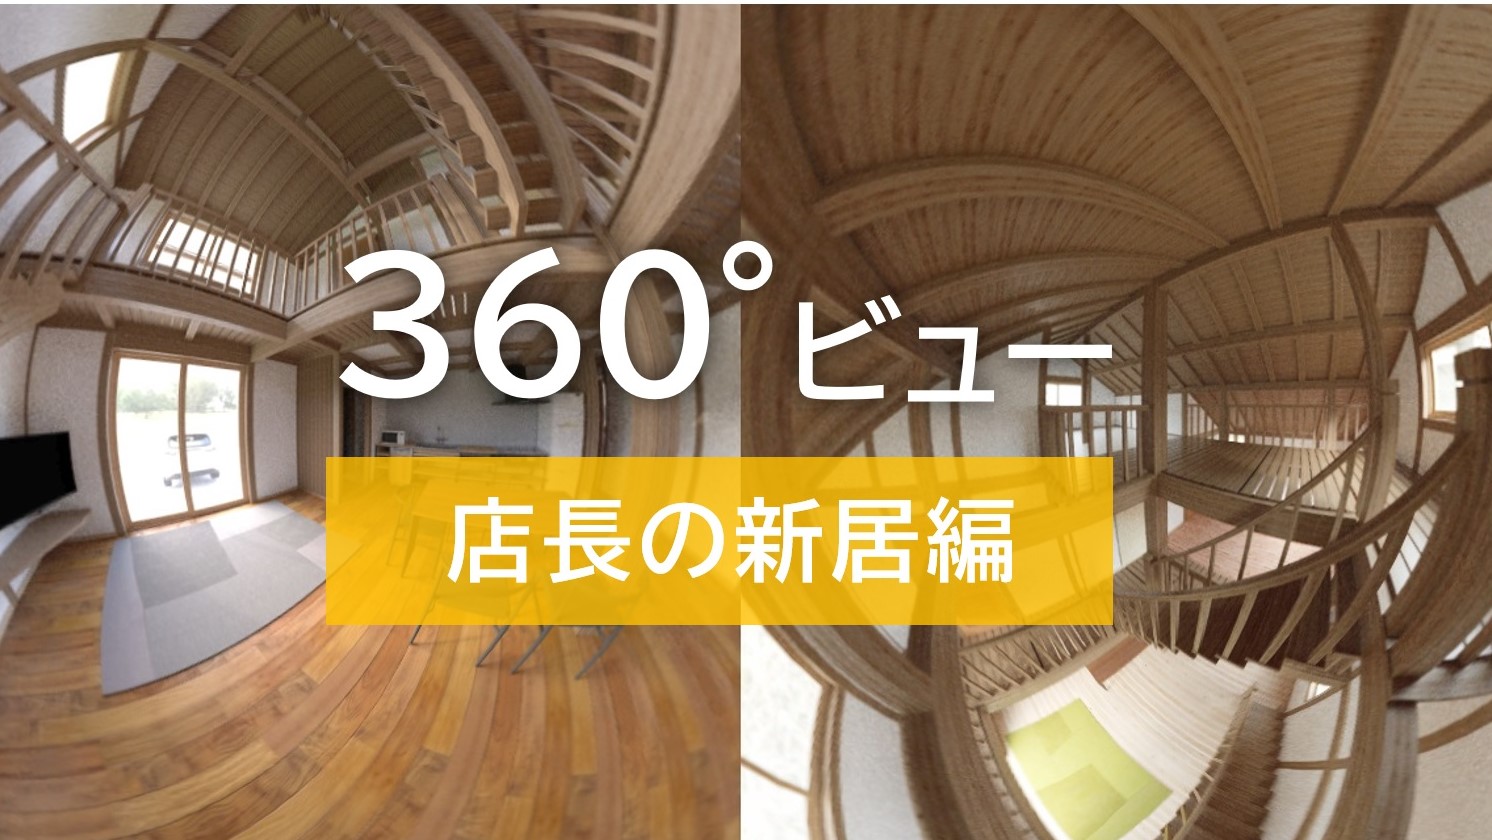 【サイエンスホーム】店長自宅建築過程その⑥「360°ビューを公開します」